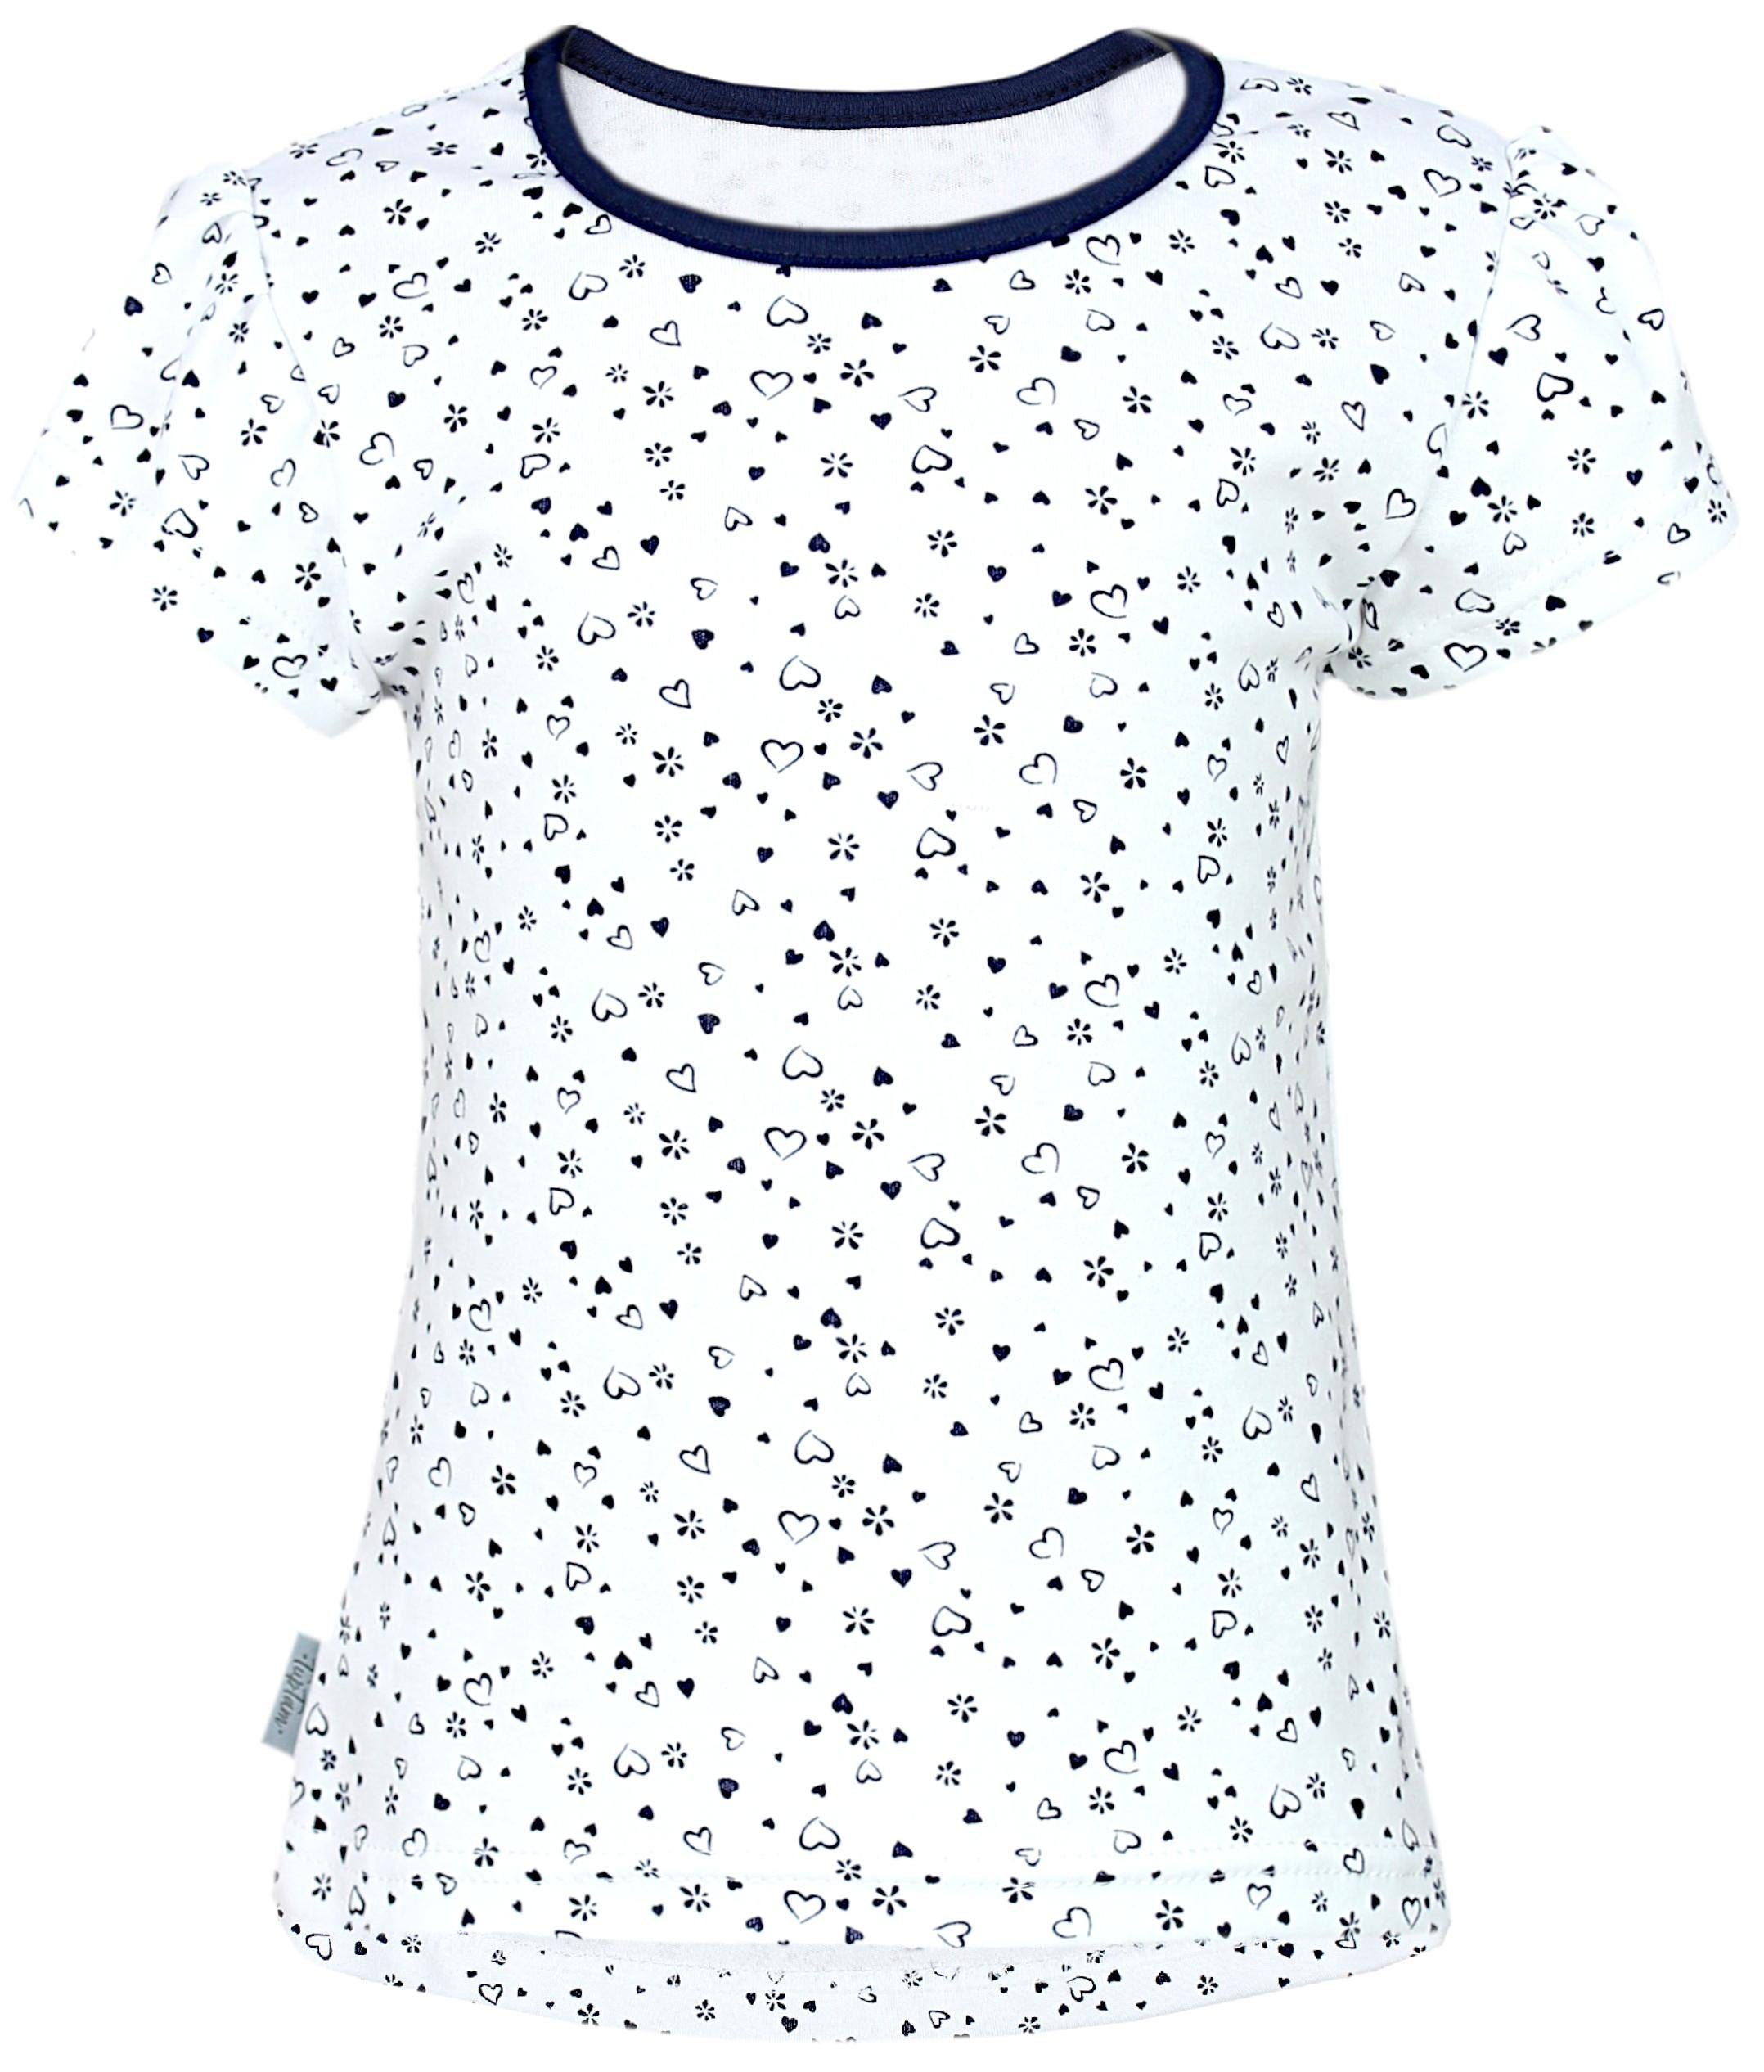 3er Shirt 3er Mädchen (3-tlg) Pack TupTam Pack Sommer T-Shirt Tunika Baby Kurzarm Rosa/Herzchen T-Shirt Weiß/Amaranth Dunkelblau Panda Kleinkind